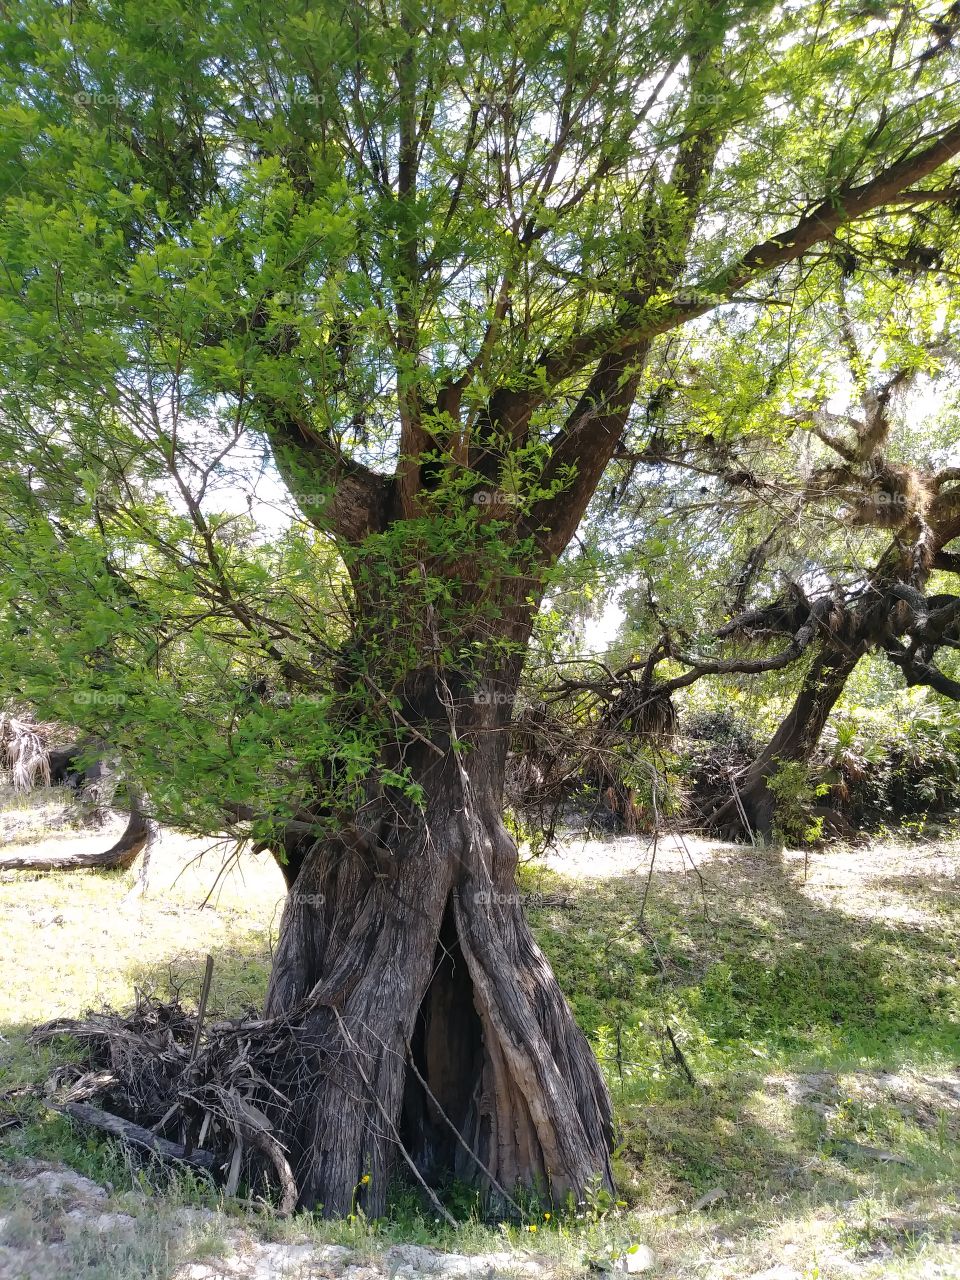 Tree for elves